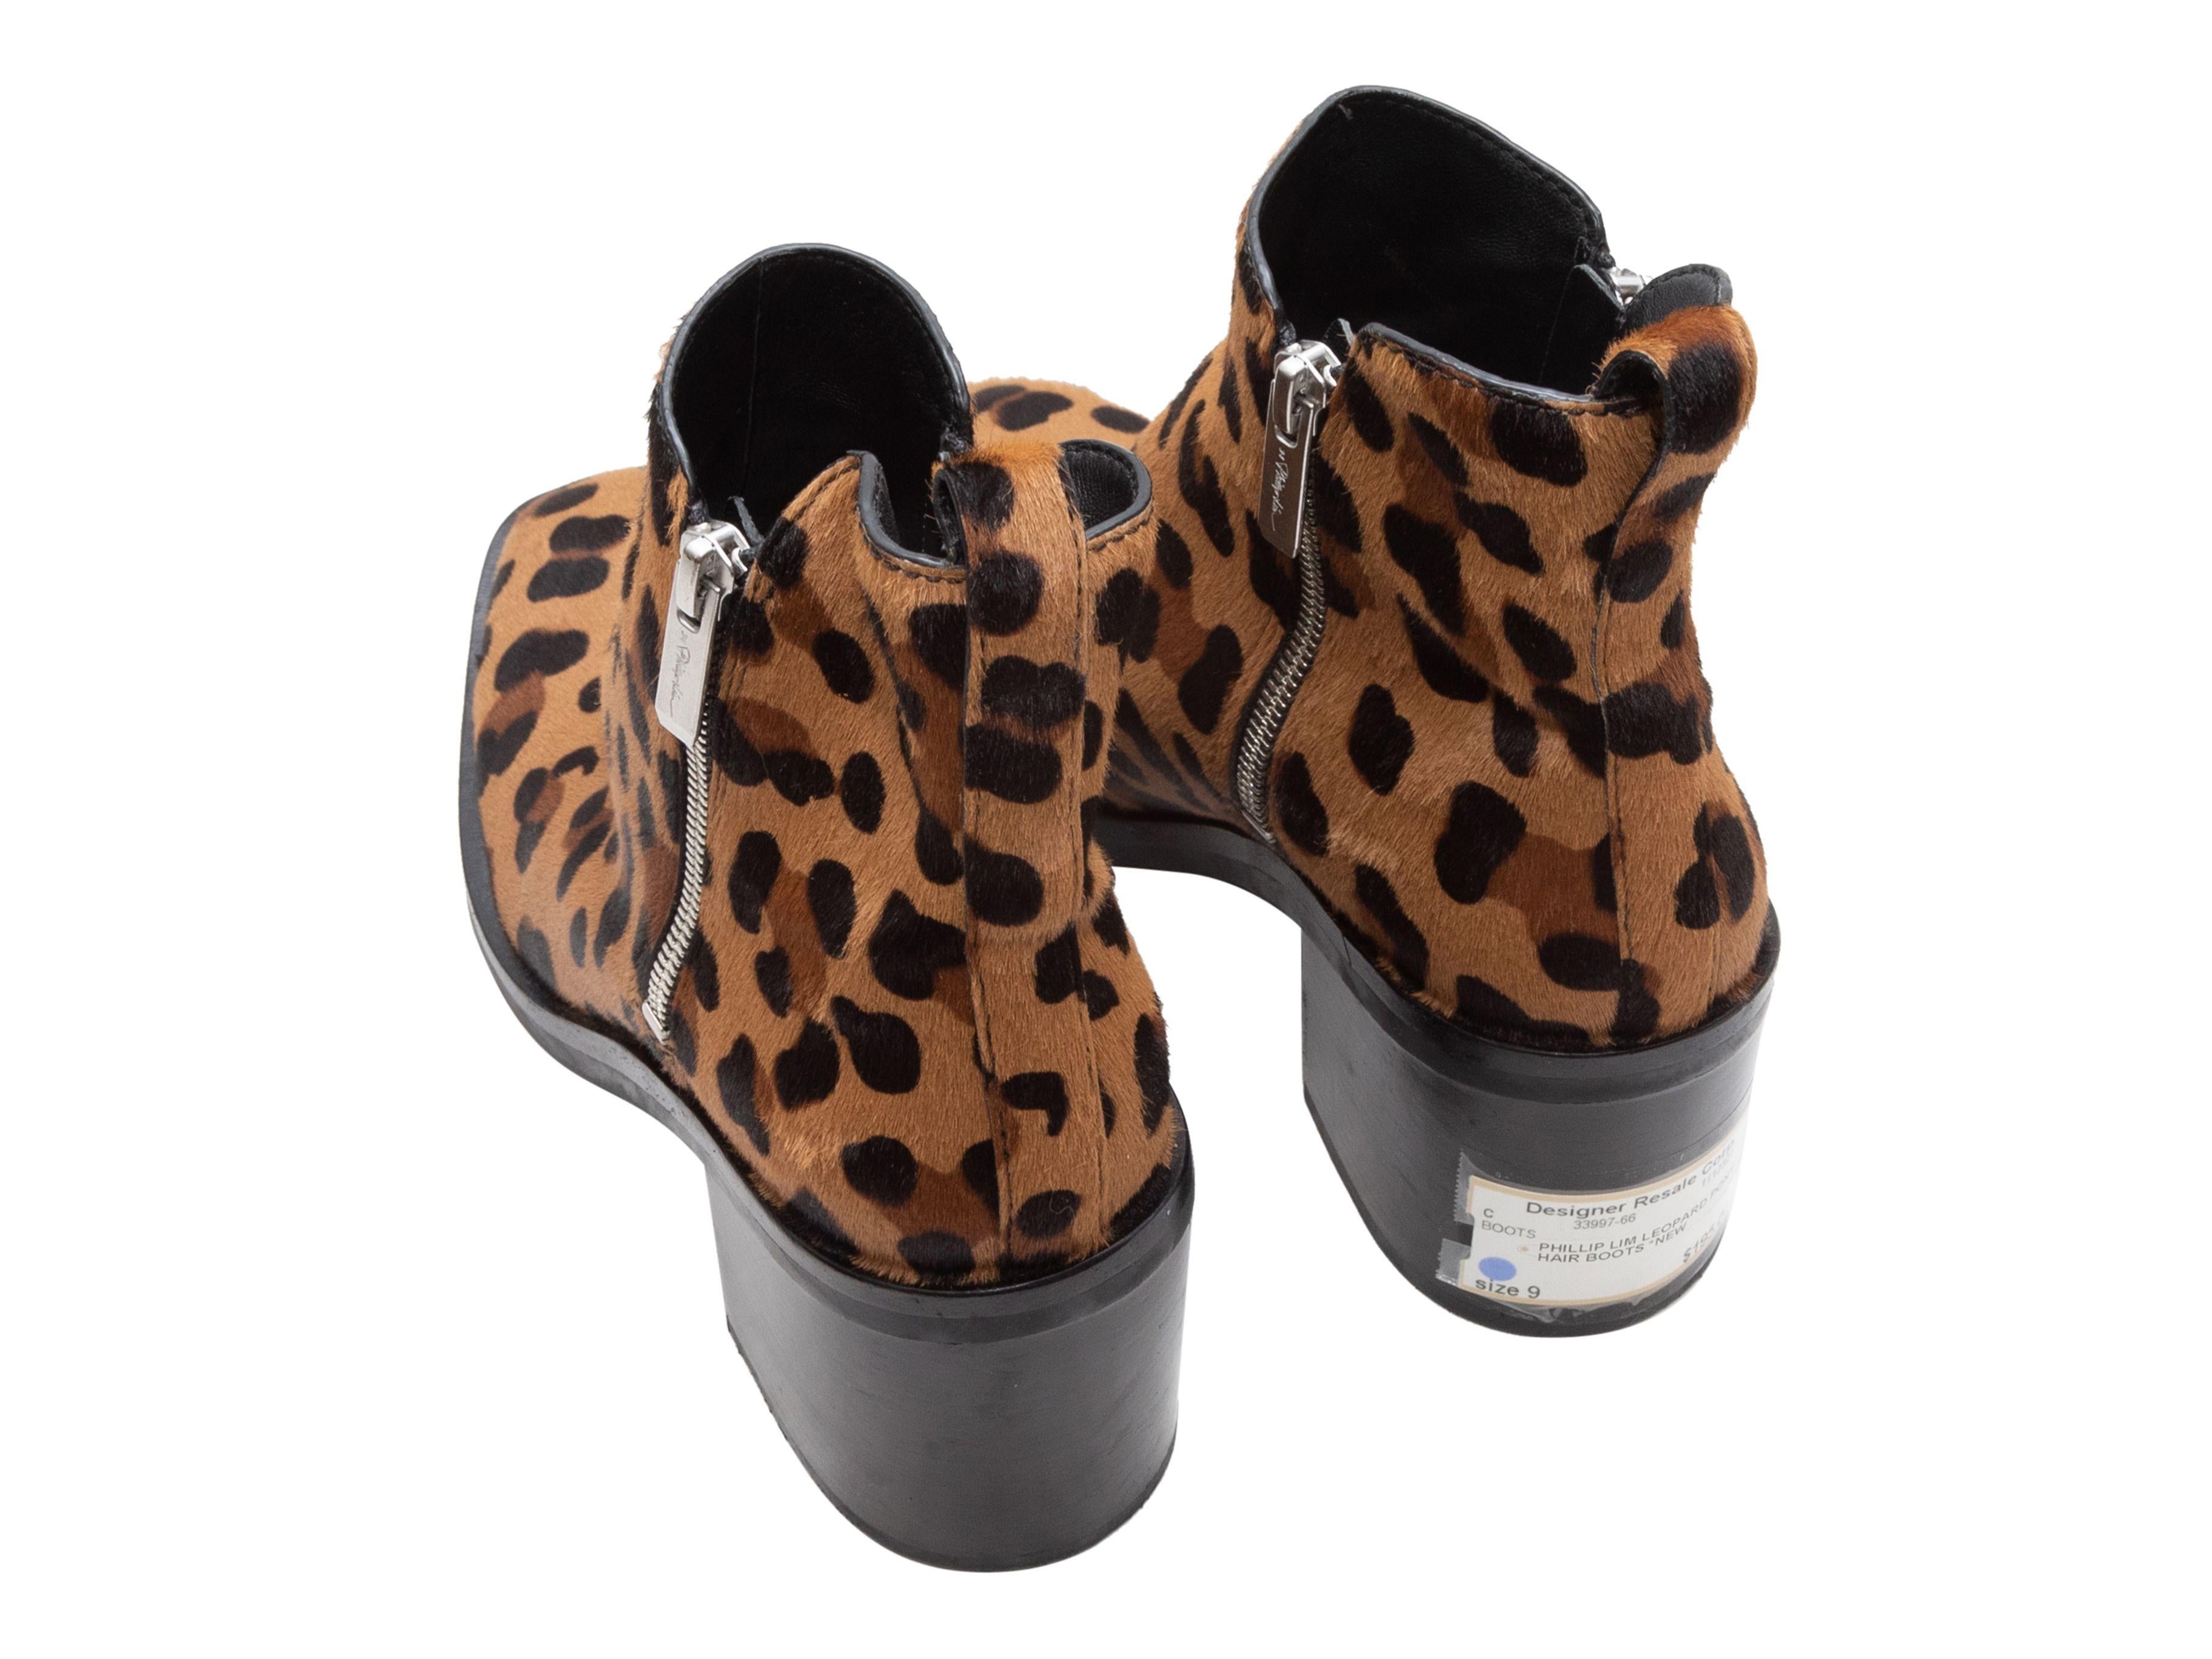 Women's or Men's 3.1 Phillip Lim Tan & Black Leopard Print Ponyhair Ankle Boots